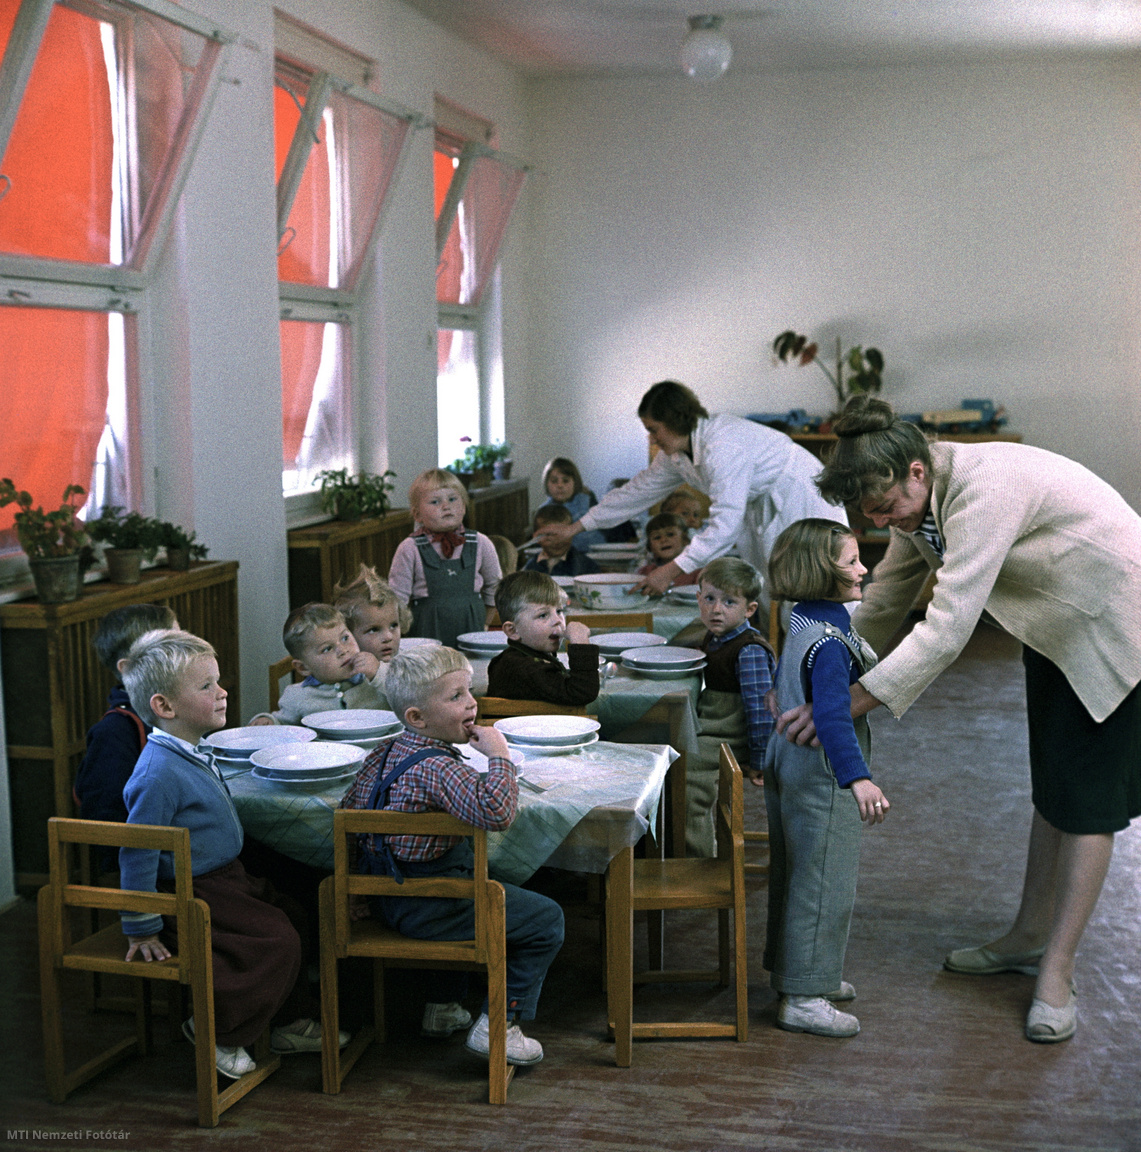 Sztálinváros, 1959. október 17. Ebédosztás a sztálinvárosi Maximenkó közi óvodában: a gyermekek az asztalnál ülve várják az ebédet, a hátsó asztalnál egy dolgozó levest mer a tányérokba